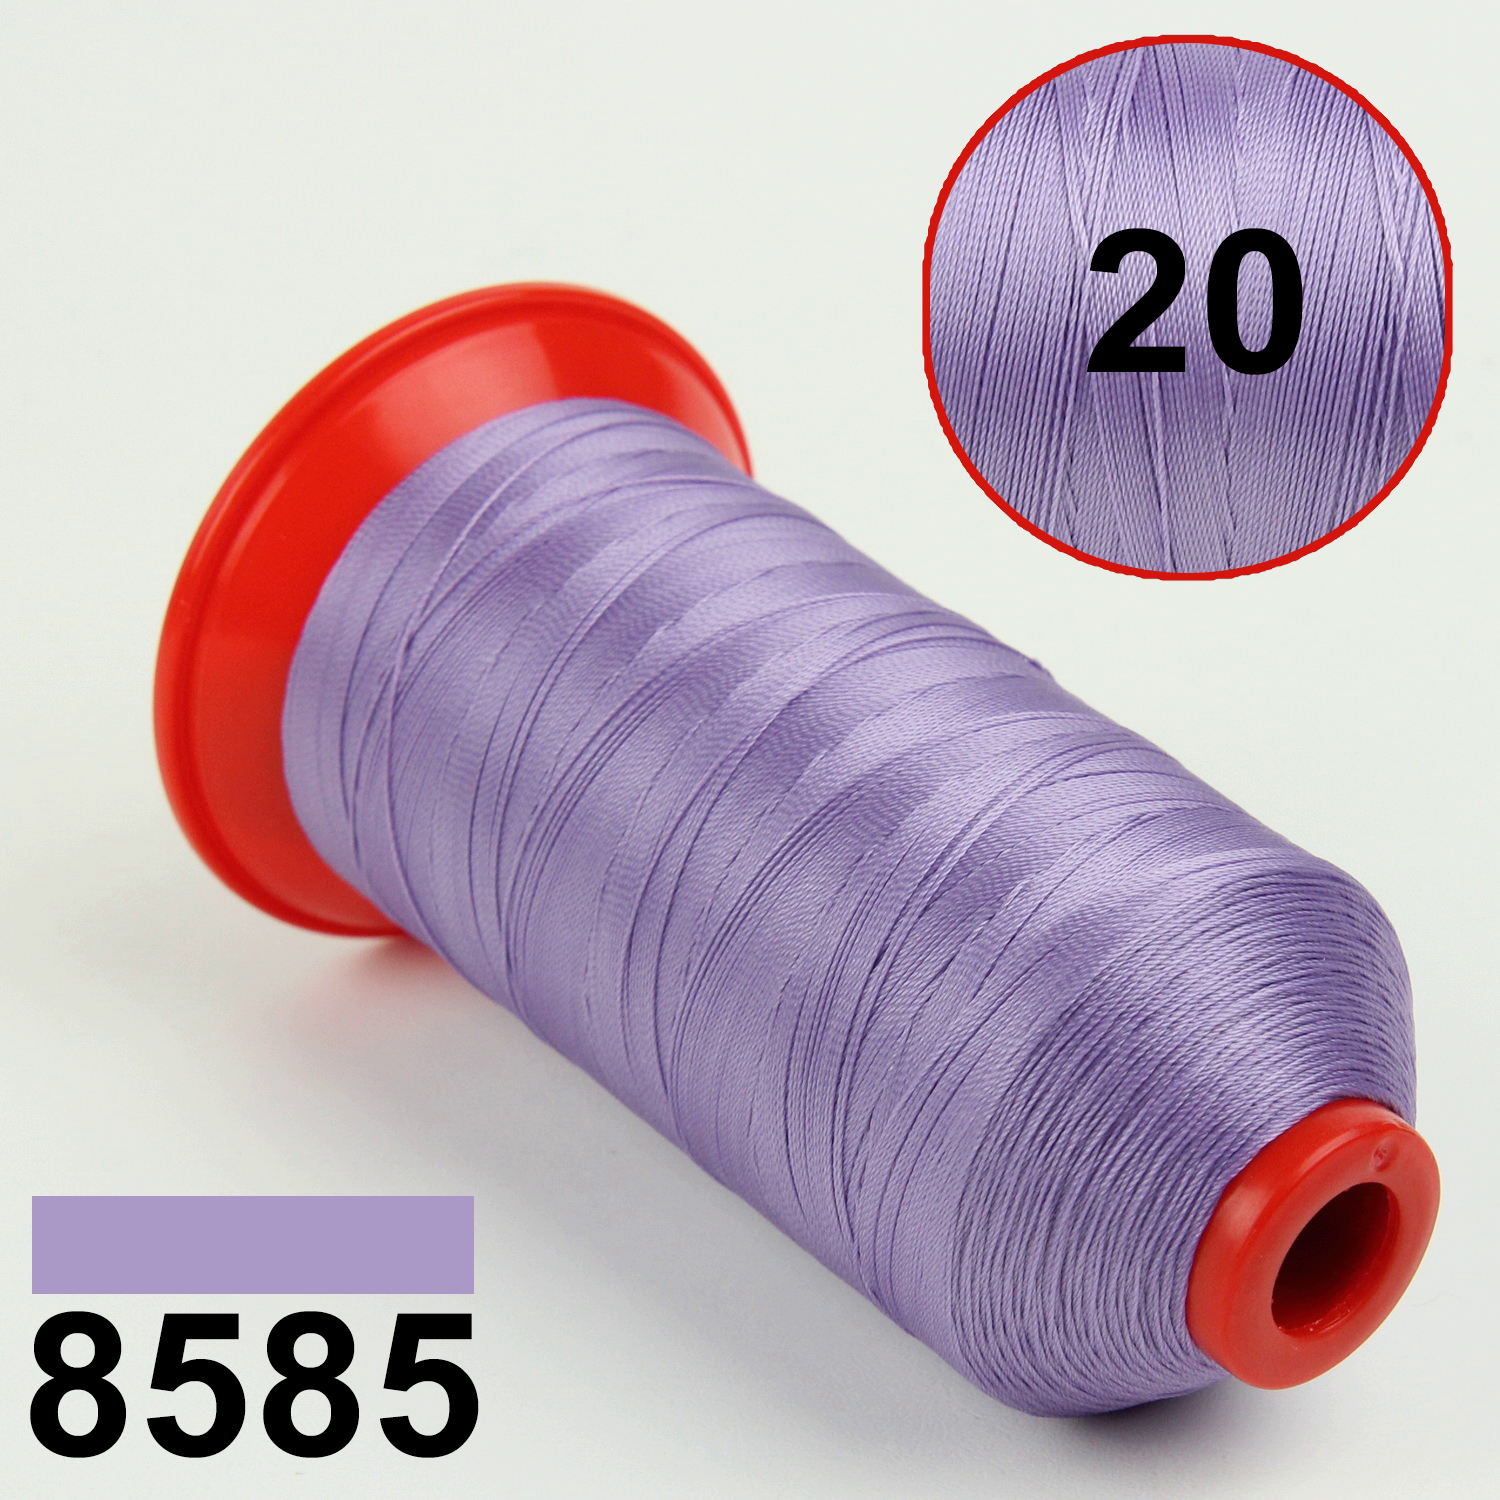 Нить POLYART(ПОЛИАРТ) N20 цвет 8585 светло фиолетовый, для пошив чехлов на автомобильные сидения и руль, 1500м детальная фотка